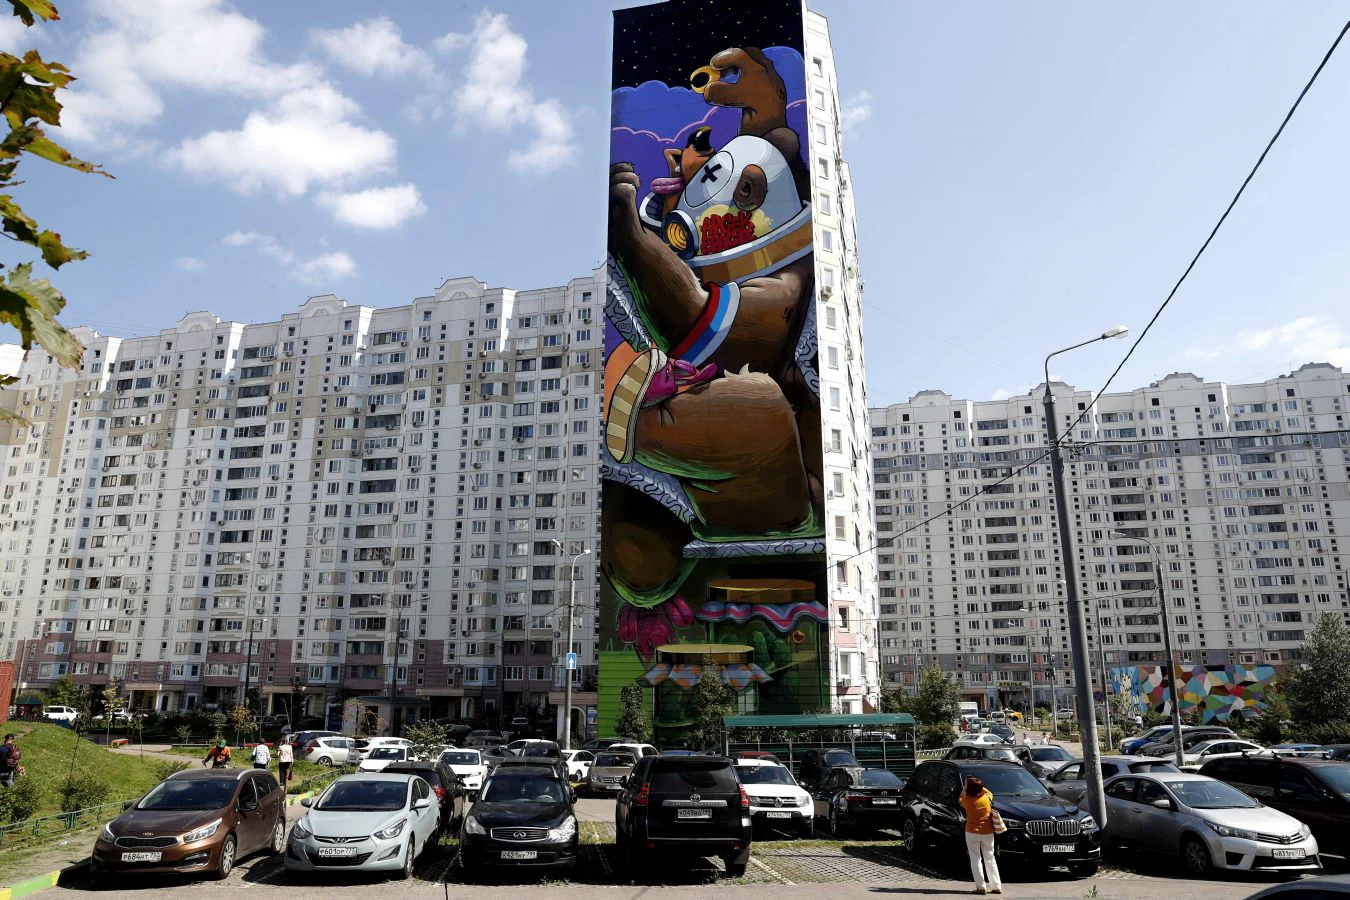 Fotos: Los murales más vistosos en Odintsovo